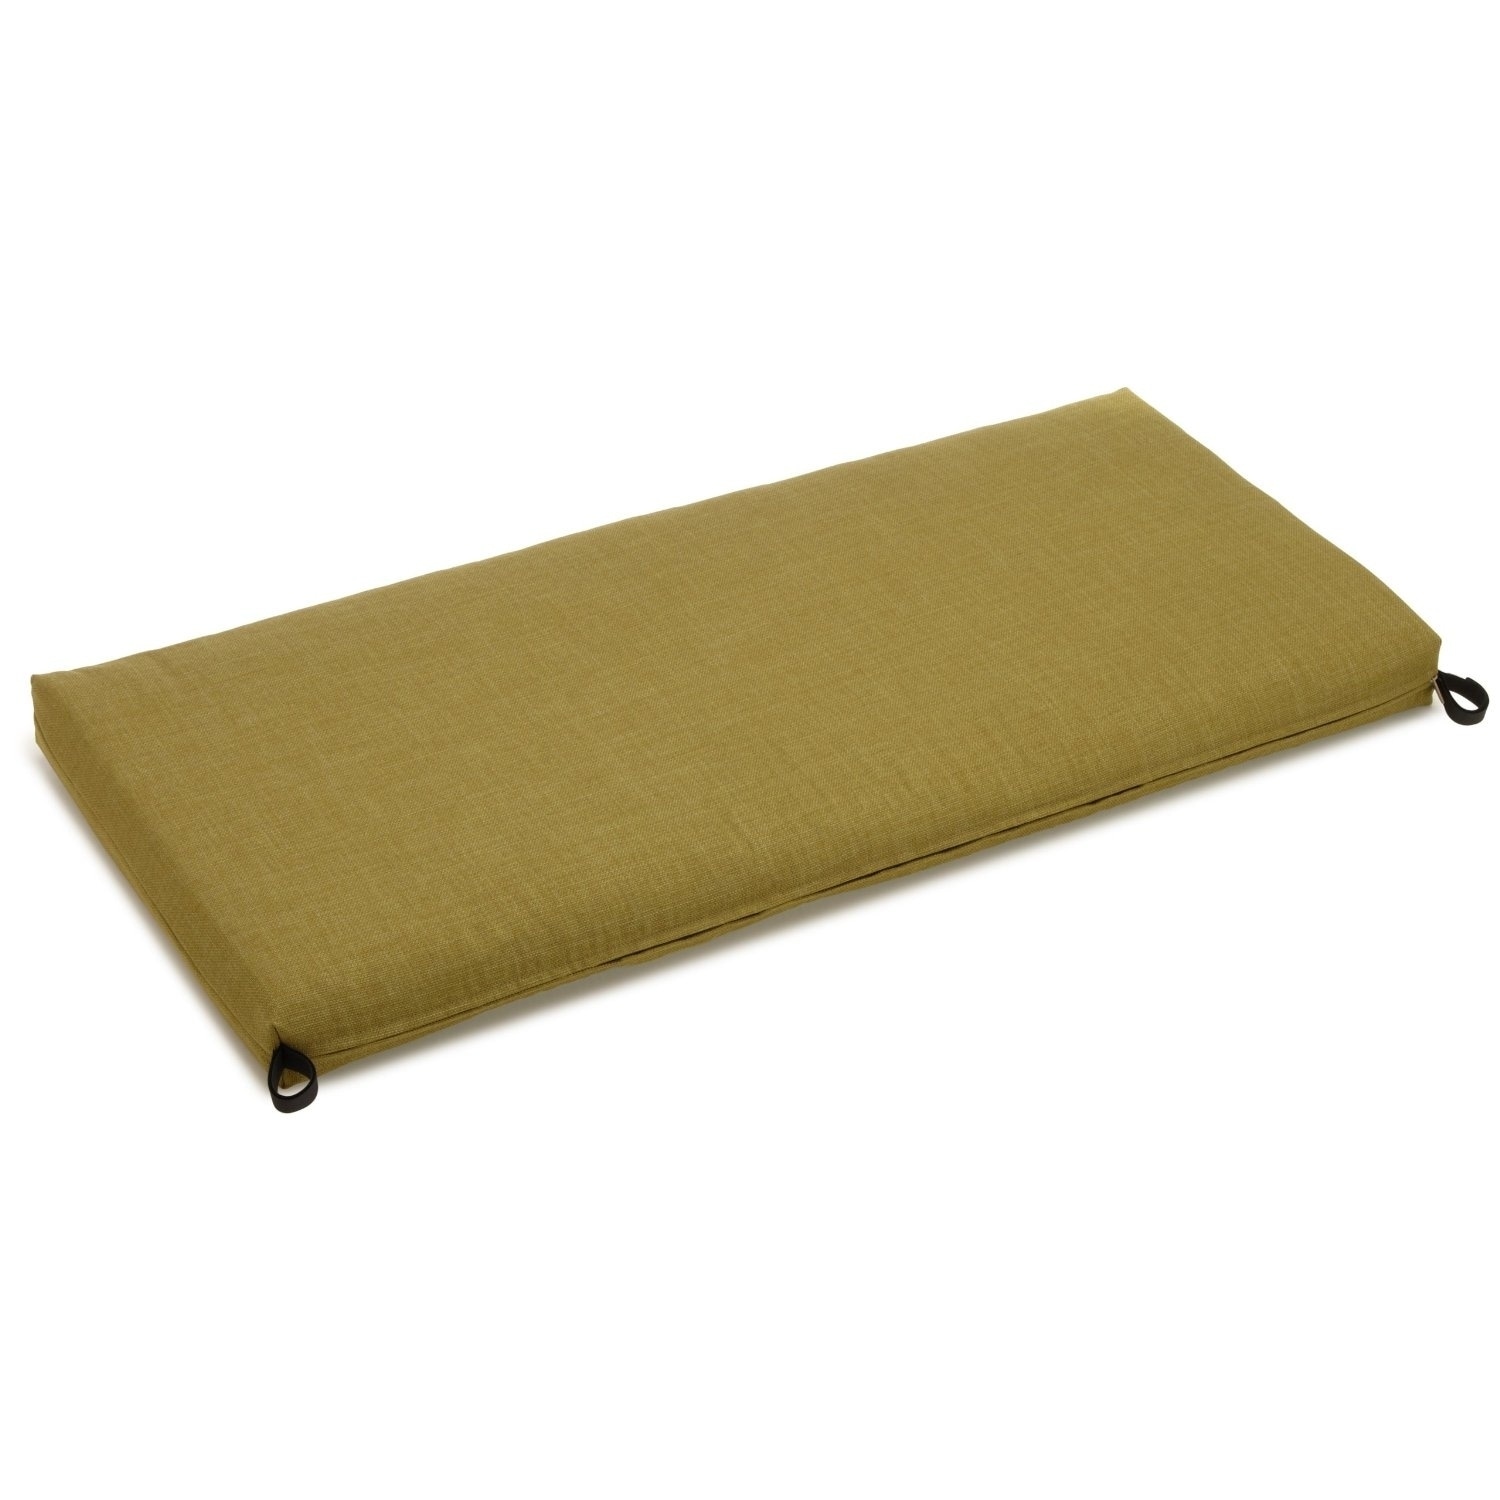 45 inch bench cushion